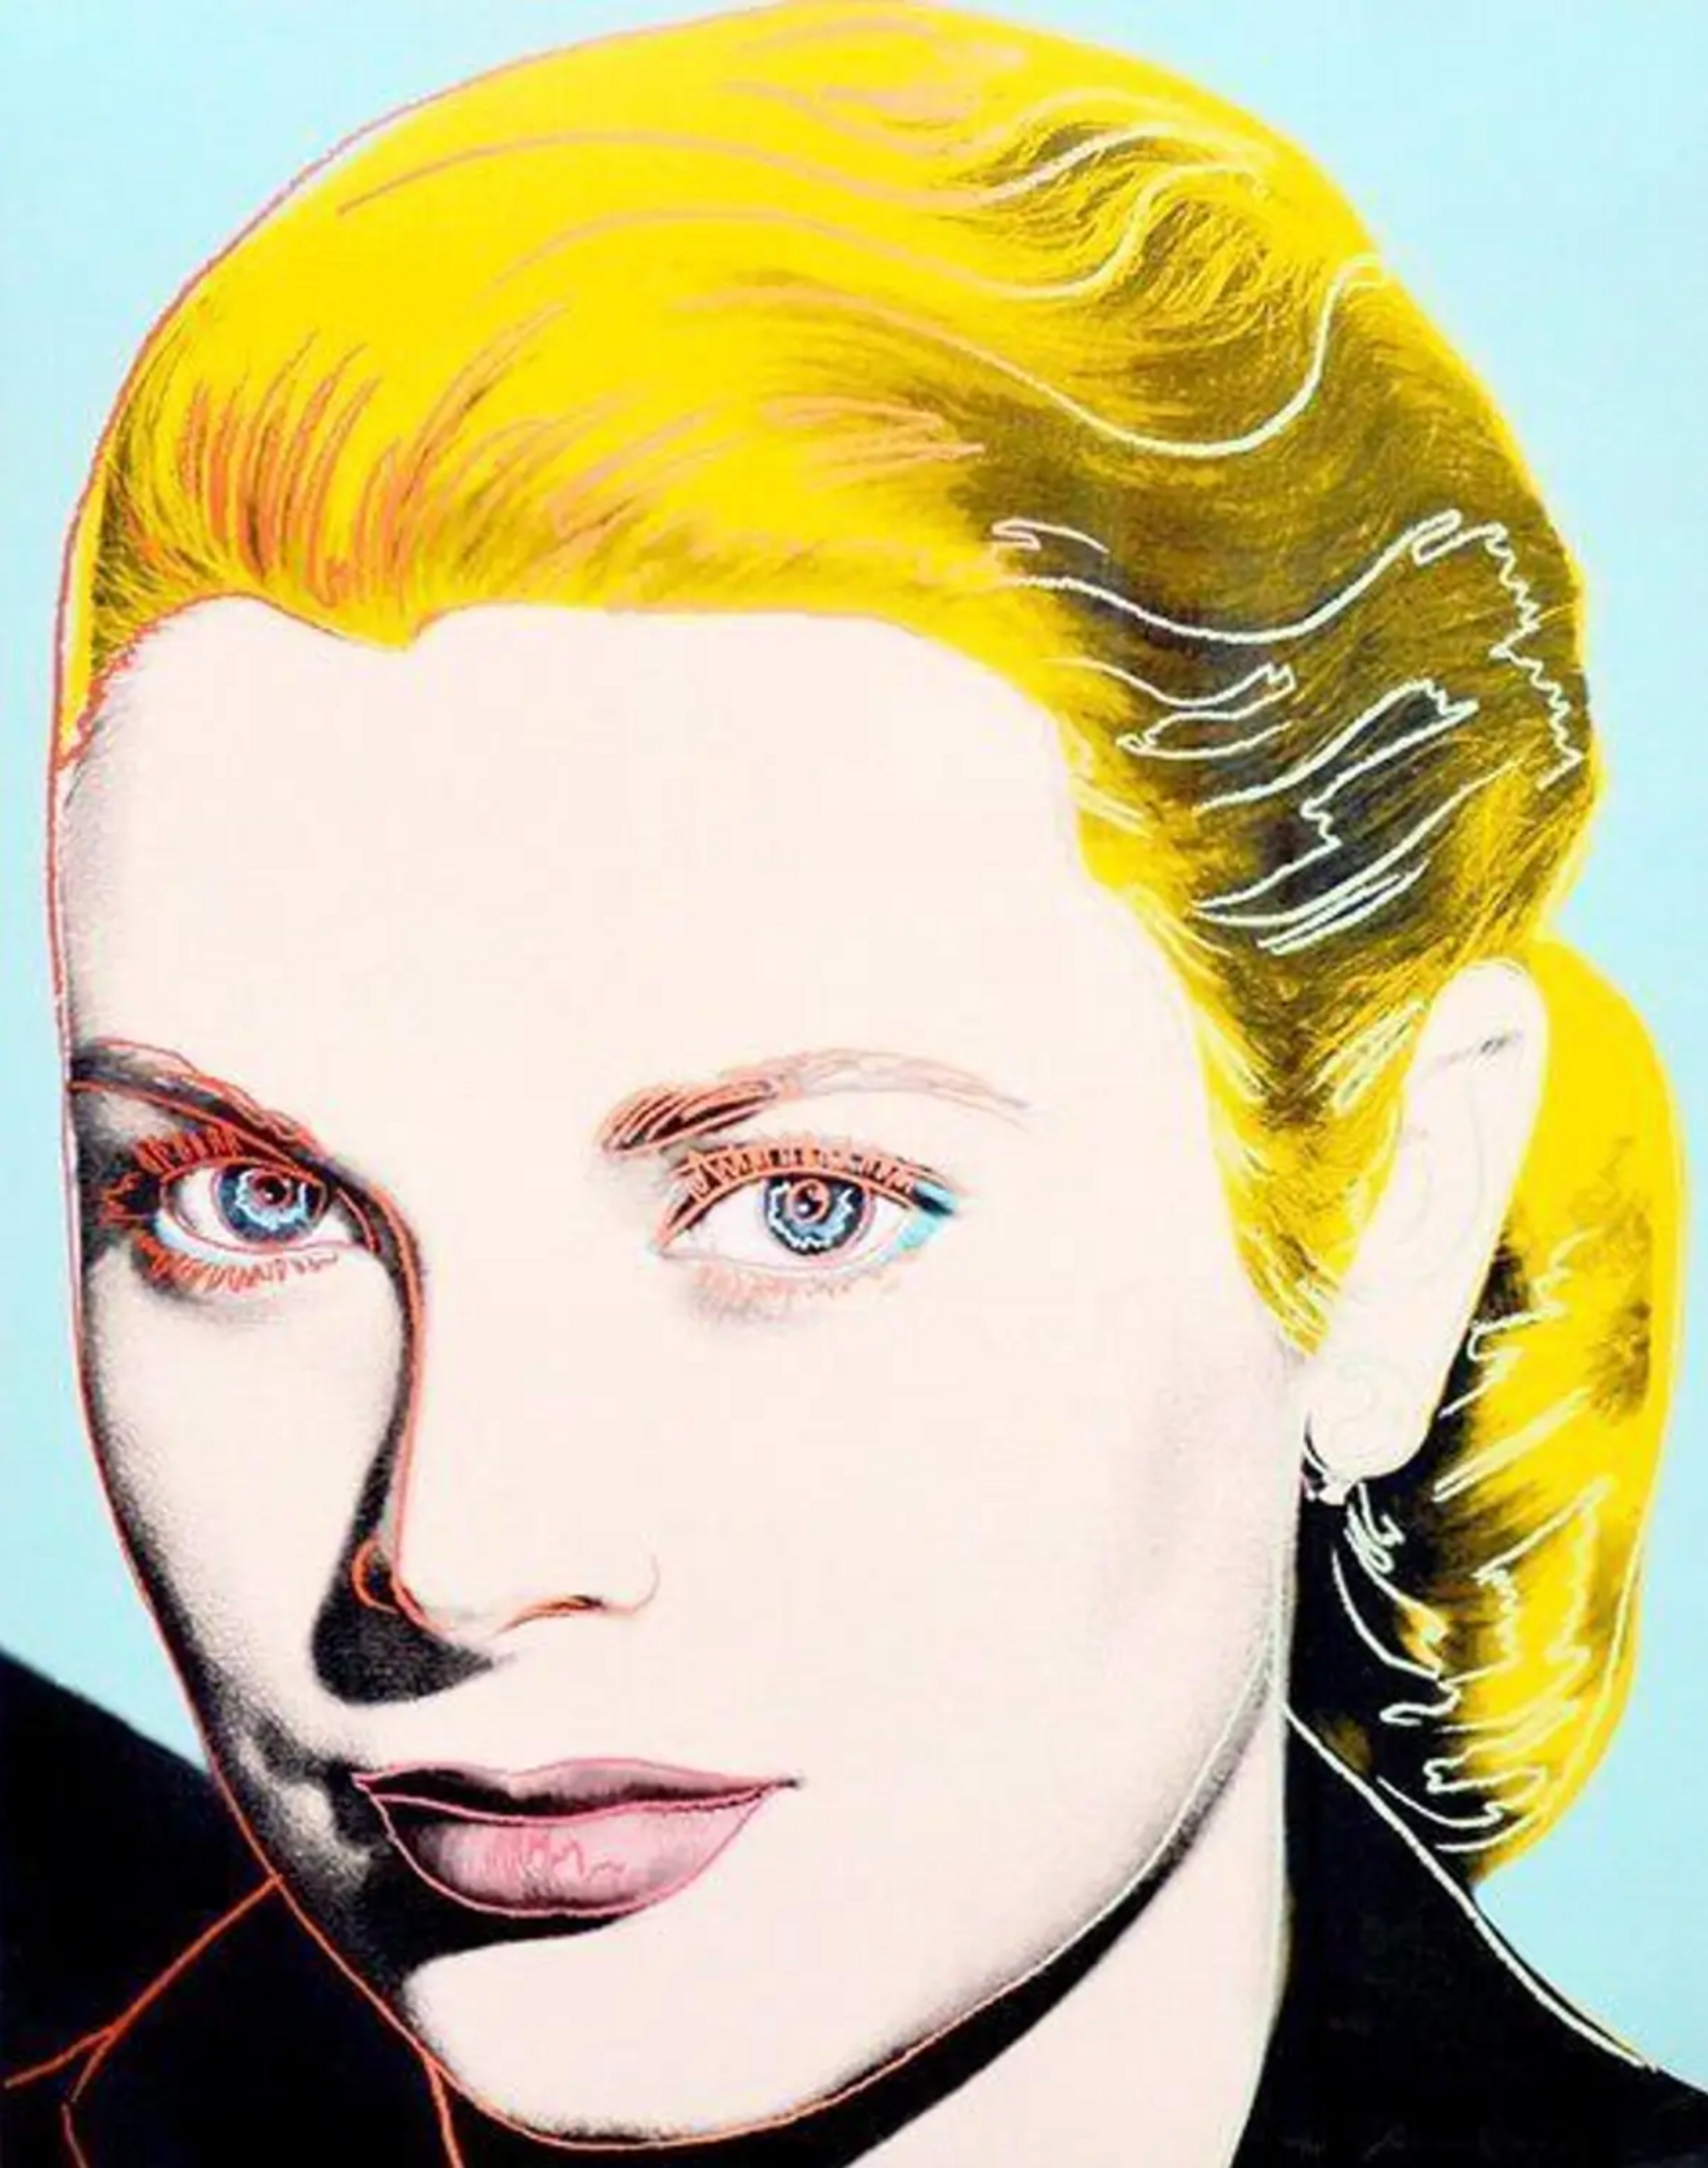 Grace Kelly by Andy Warhol - MyArtBroker